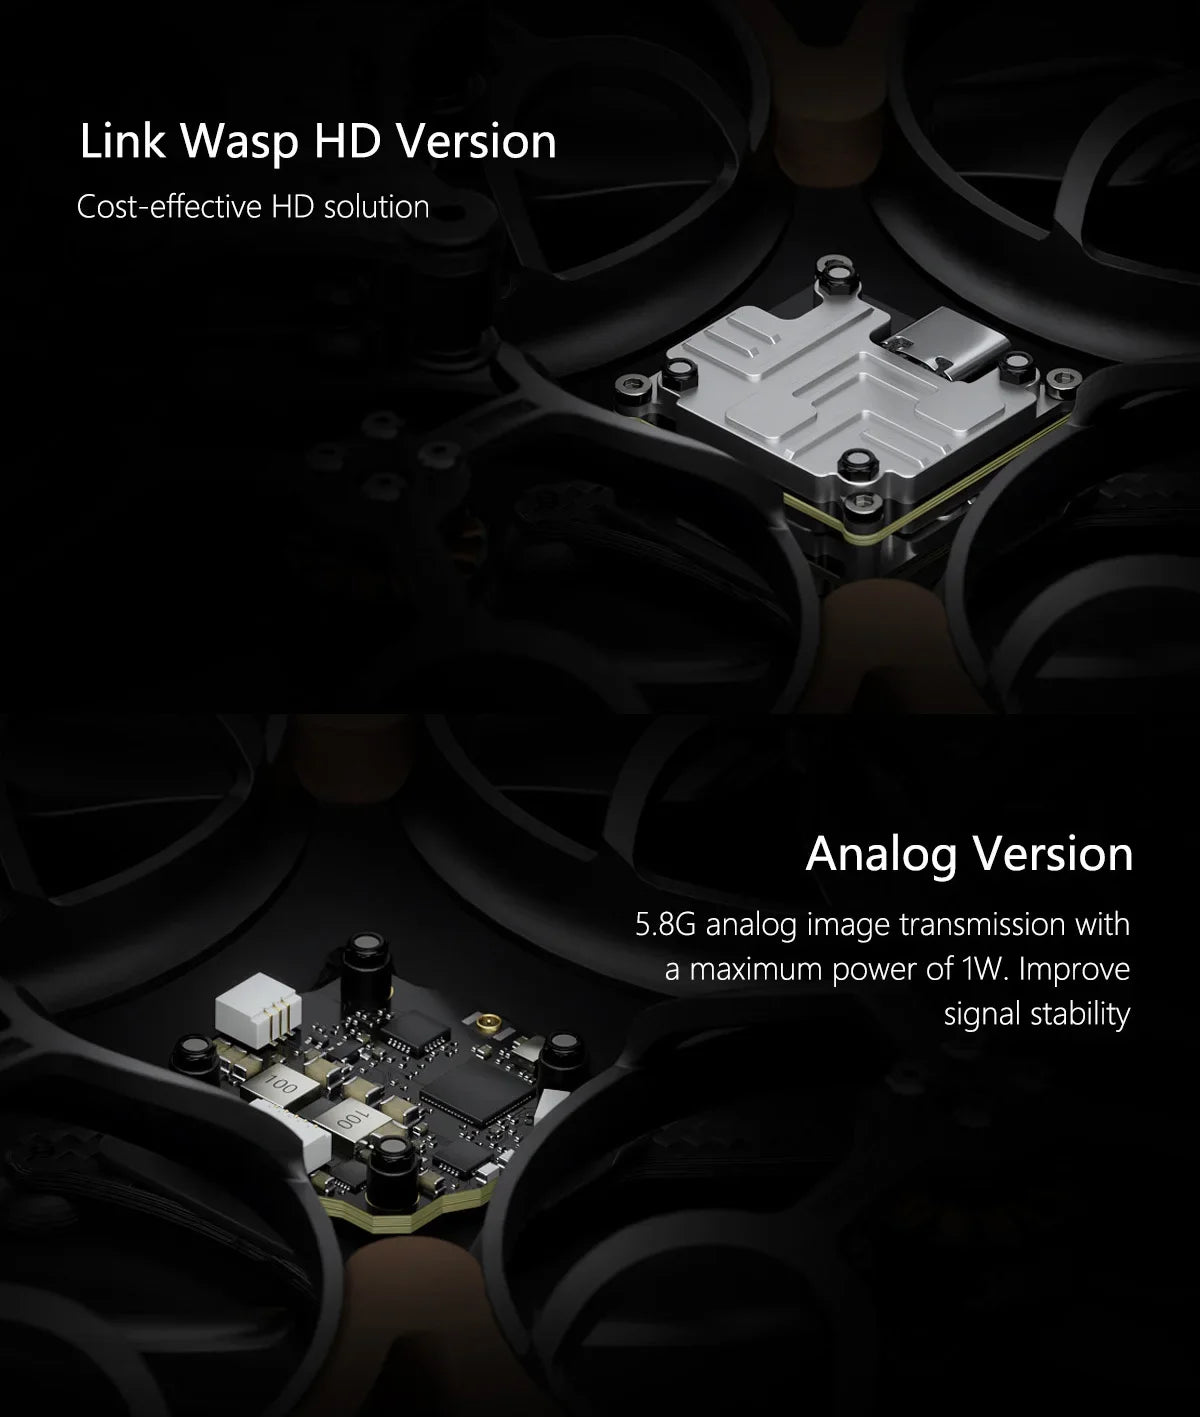 GEPRC Cinelog25 V2 Analog - FPV, Link Wasp HD Version Cost-effective HD solution Analog Version 5.8G analog image transmission